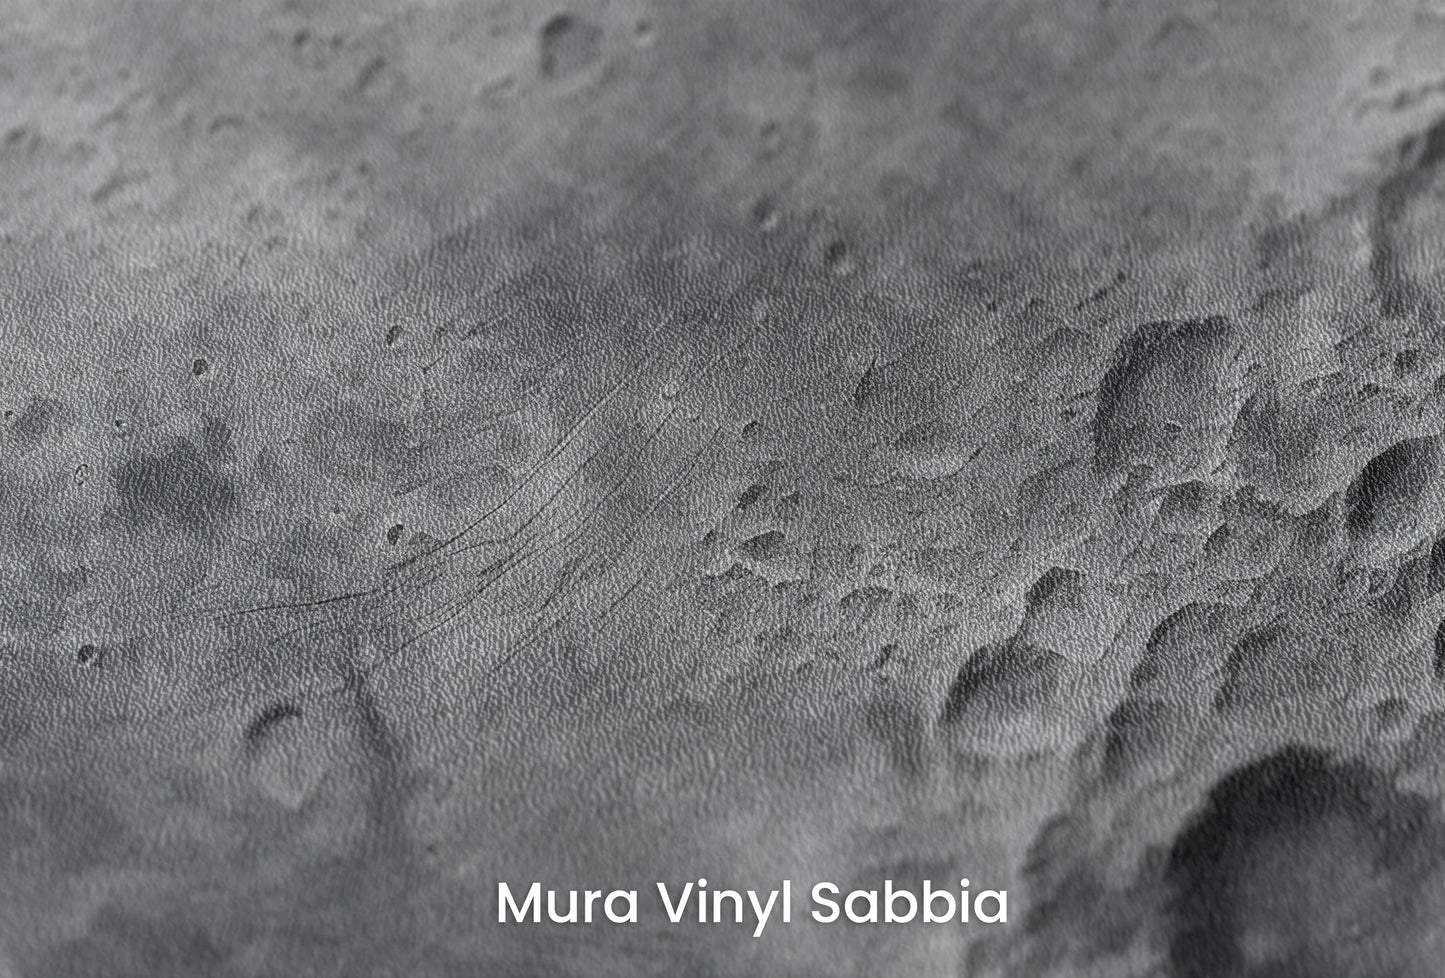 Zbliżenie na artystyczną fototapetę o nazwie Lunar Detail na podłożu Mura Vinyl Sabbia struktura grubego ziarna piasku.